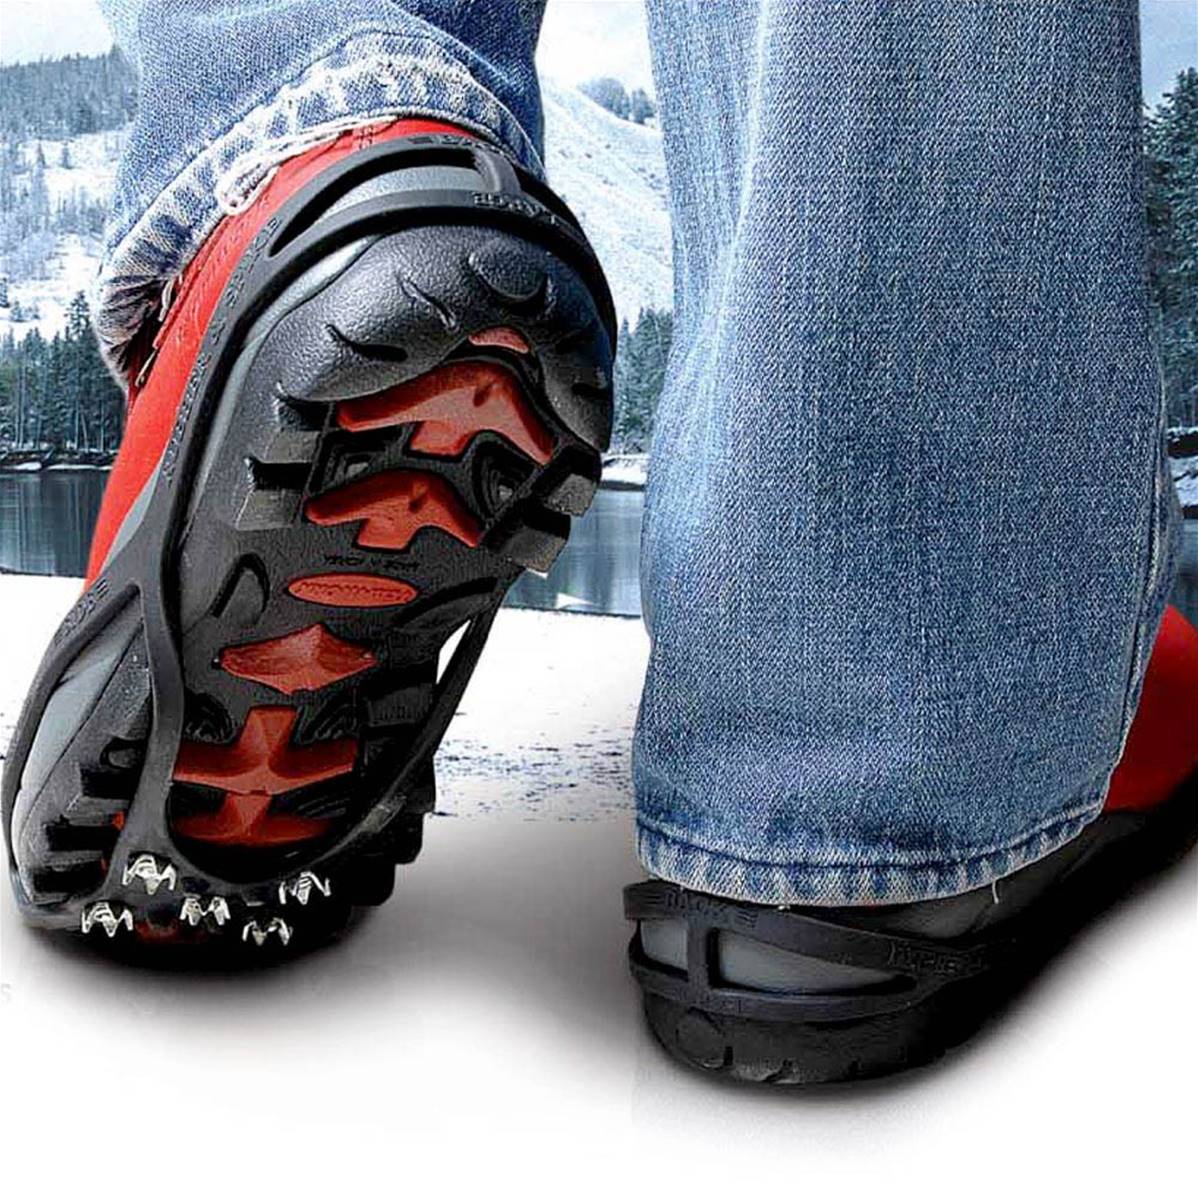 Crampon pour chaussure anti glisse sur neige et verglas (glace)